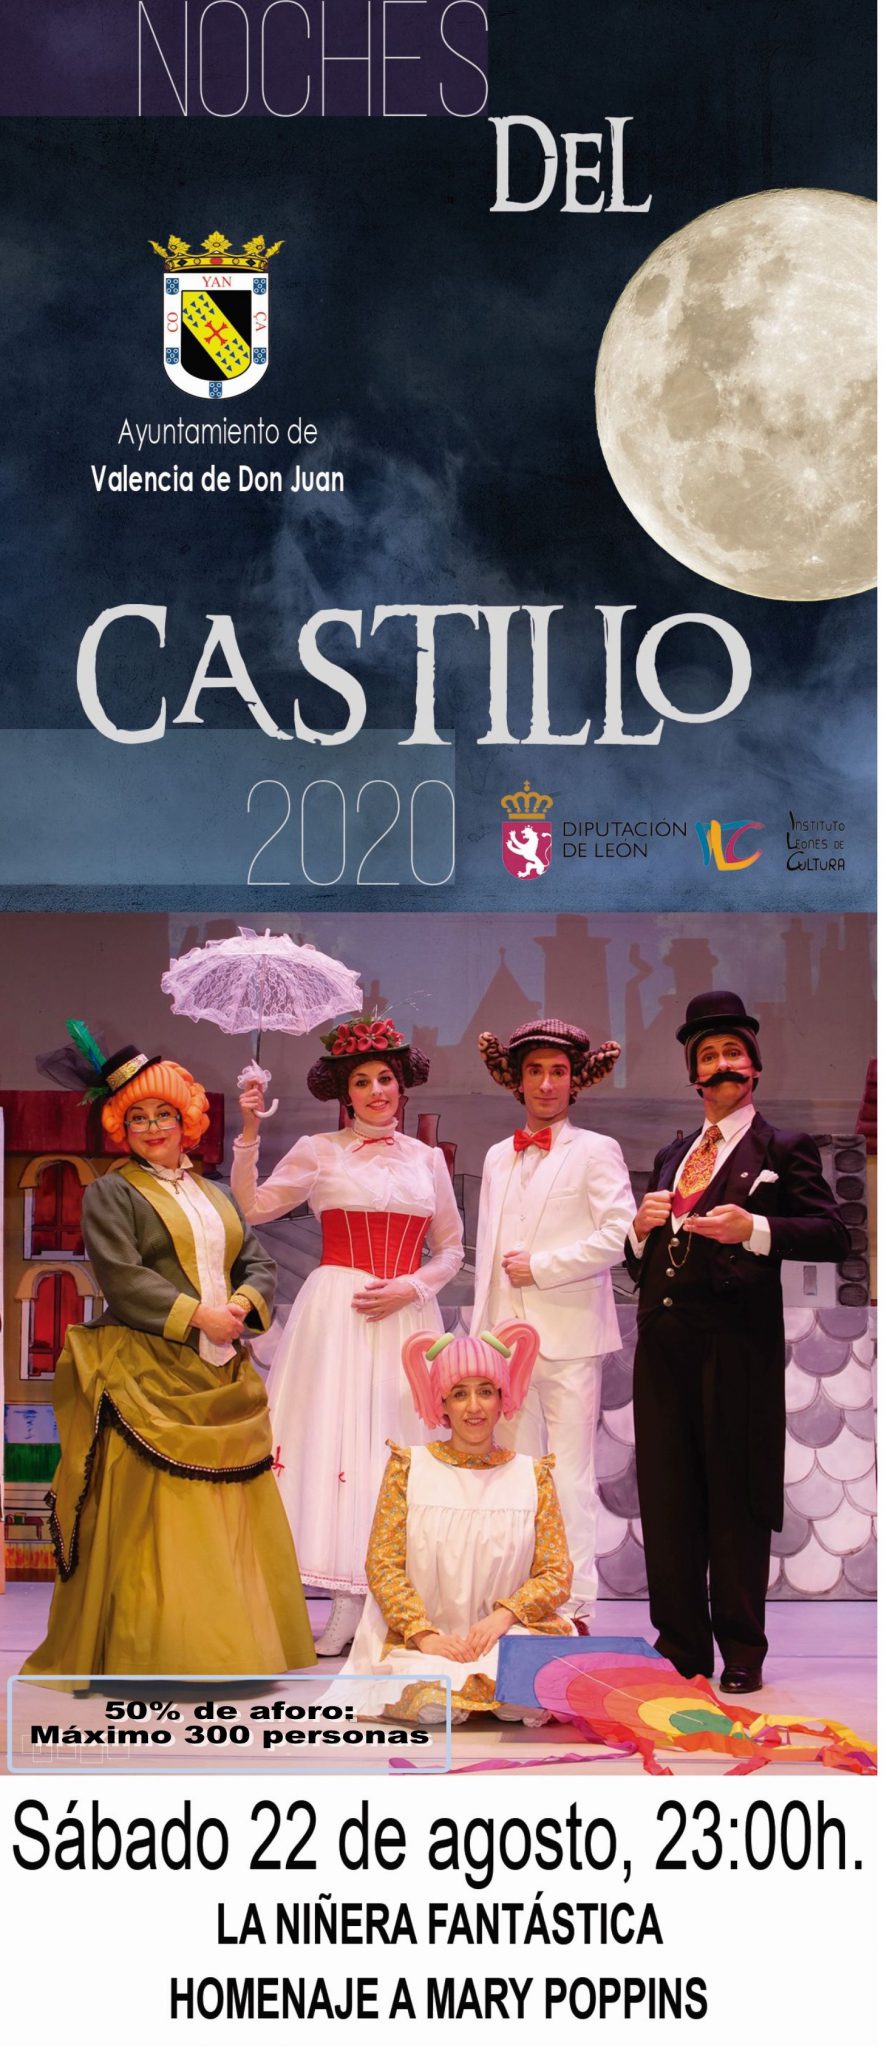 Noches del Castillo”: Musical “La niñera fantástica. Homenaje a Mary Poppins”, de la compañía PTClam El Globo Rojo.